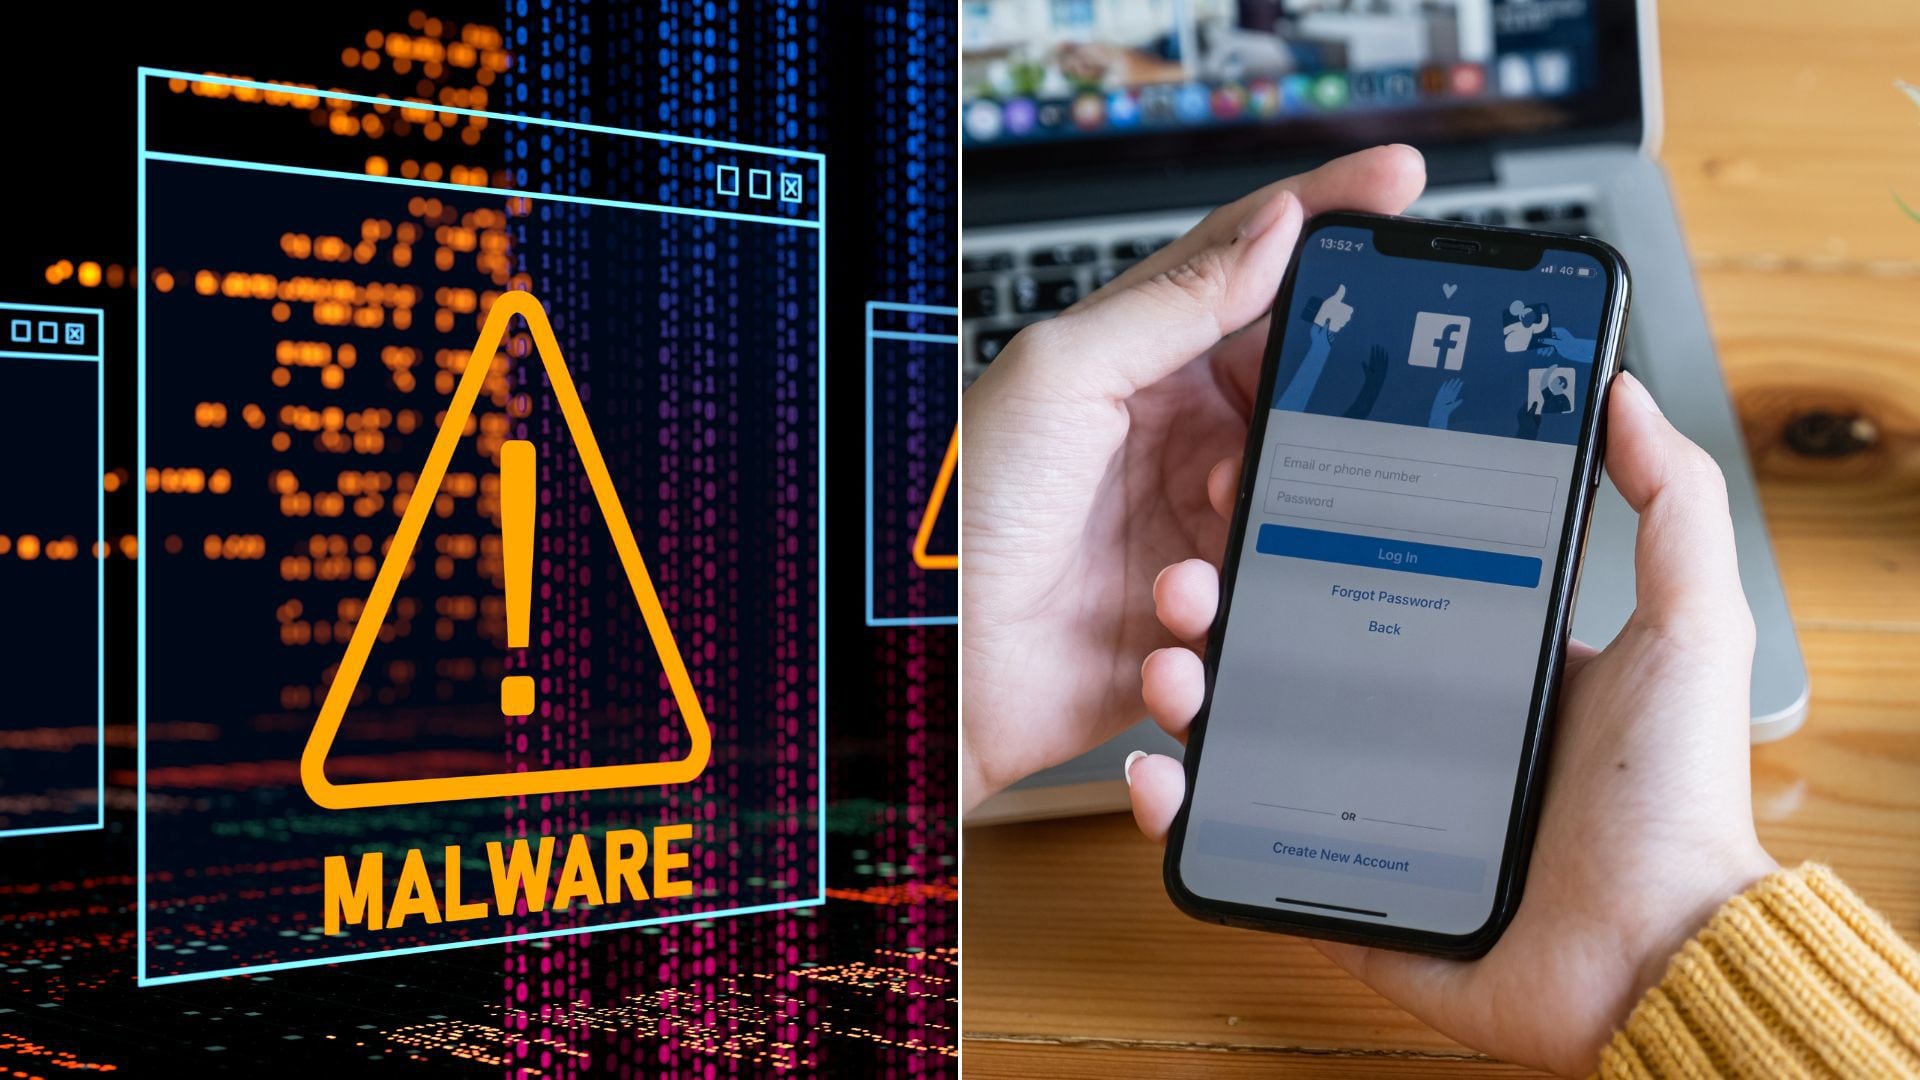 Campaña en Facebook usa anuncios de temas y juegos para difundir malware SYS01, robando información y secuestrando cuentas comerciales.